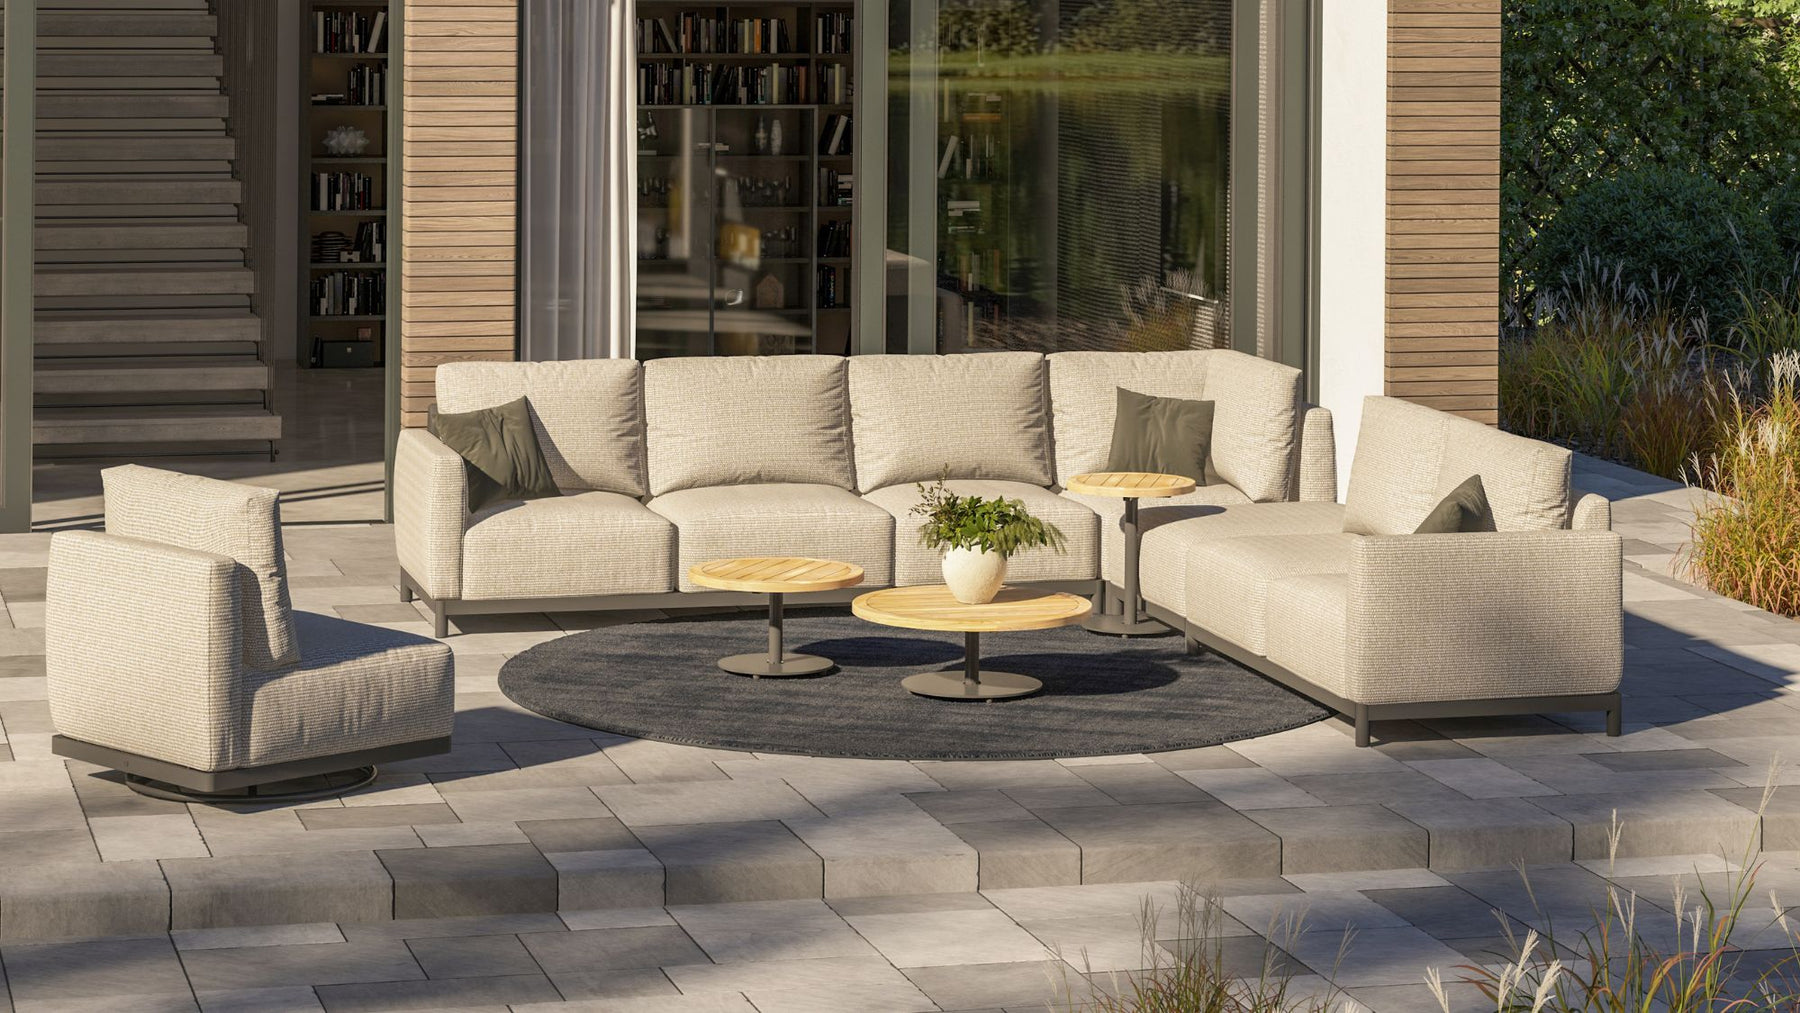 The Best of 4 Seasons Outdoor Garden Furniture